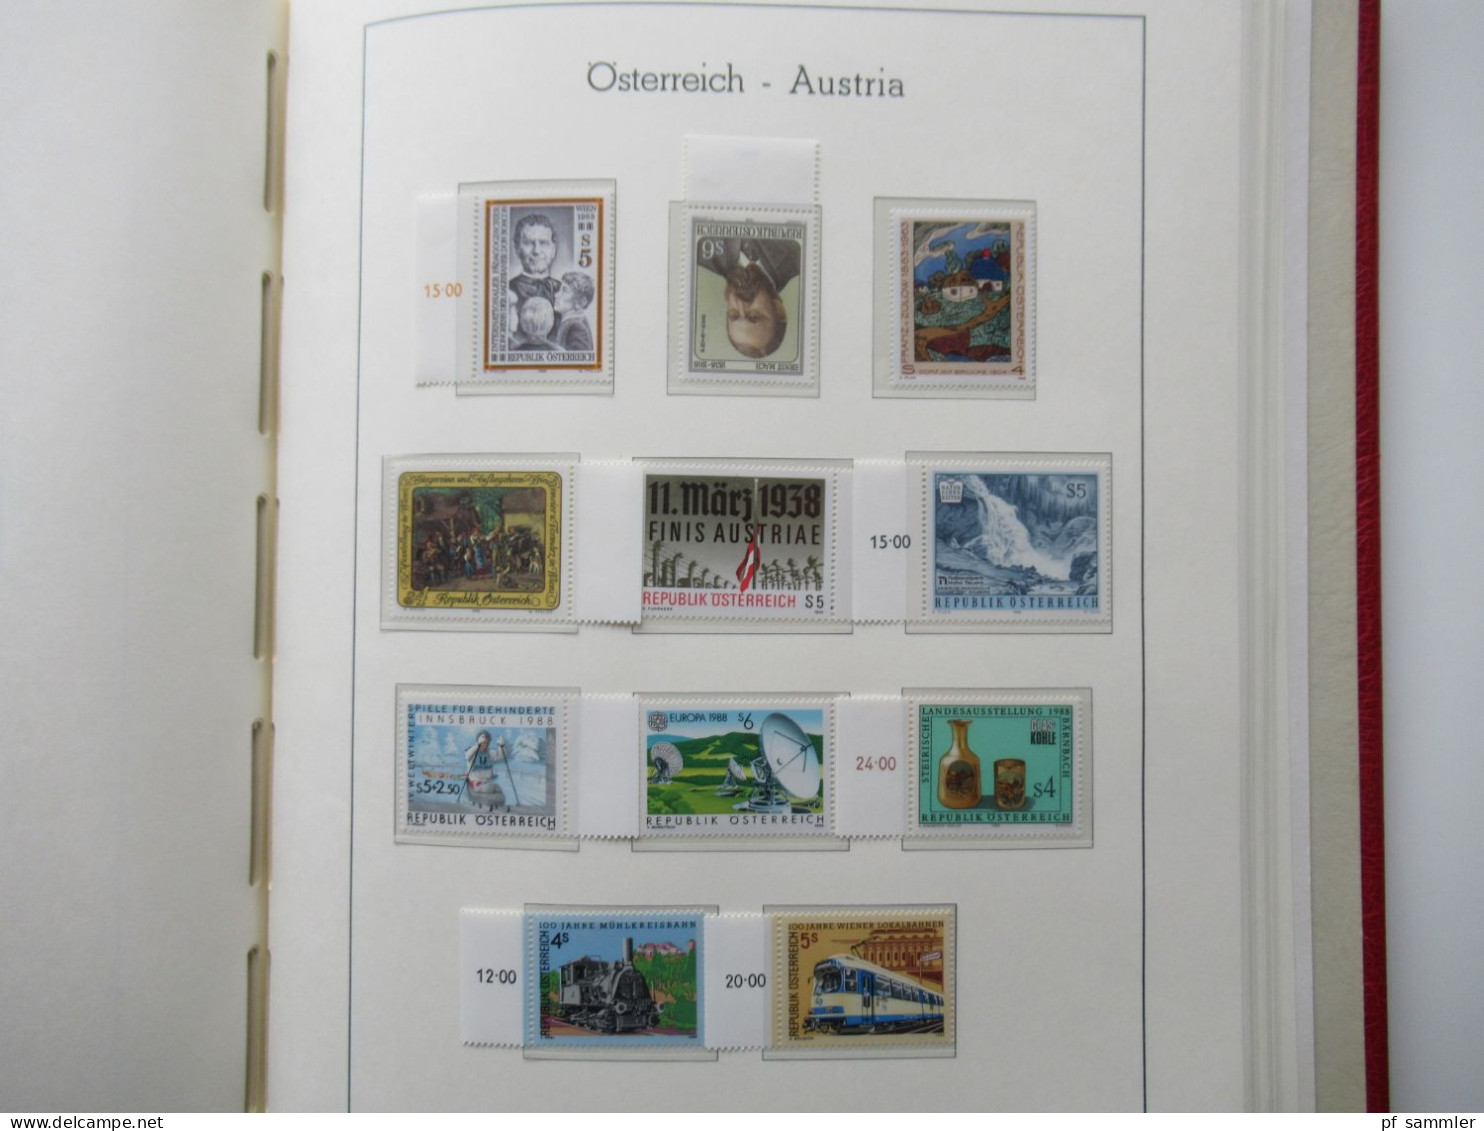 Österreich 1984- 1992 doppelt gesammelt ** und gestempelt etliche Randstücke! Schöne Sammlung im Leuchtturm VD Album